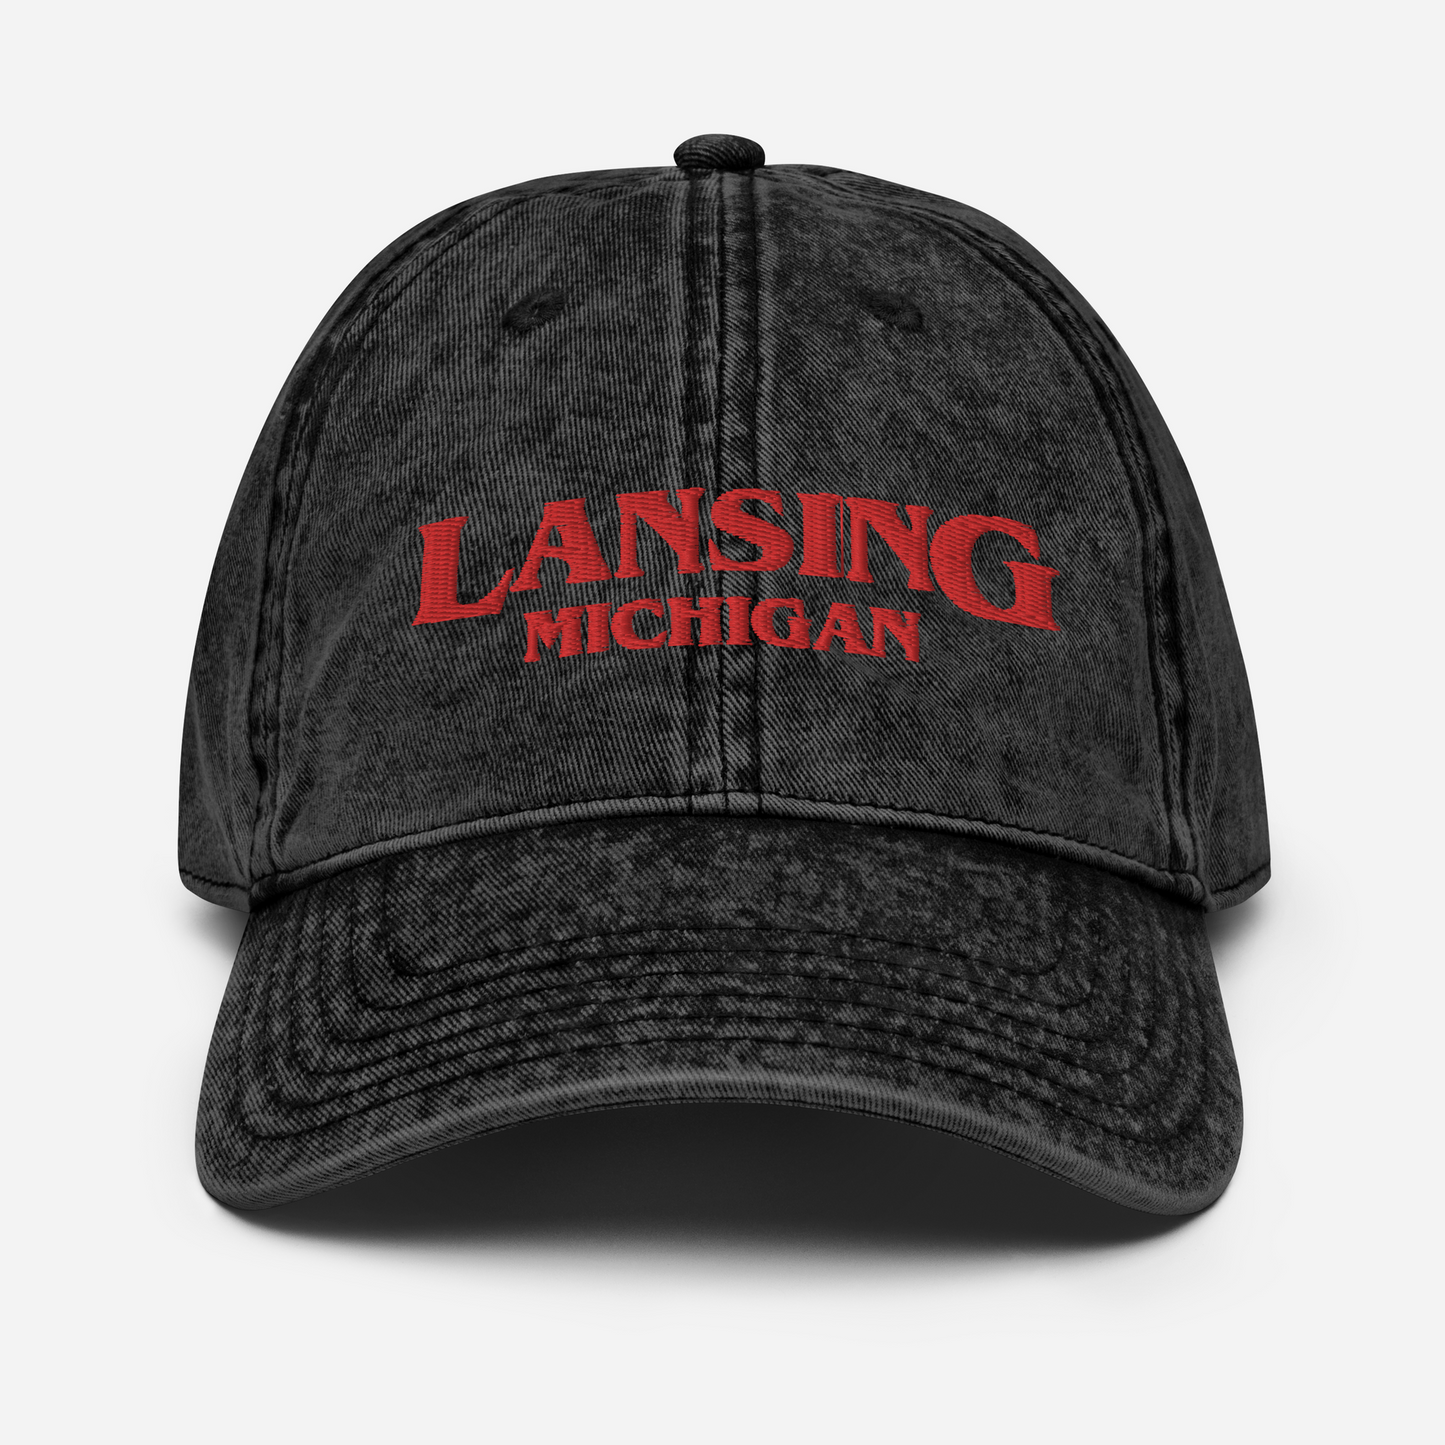 'Lansing Michigan' Vintage Baseball Cap (1980s Drama Parody)